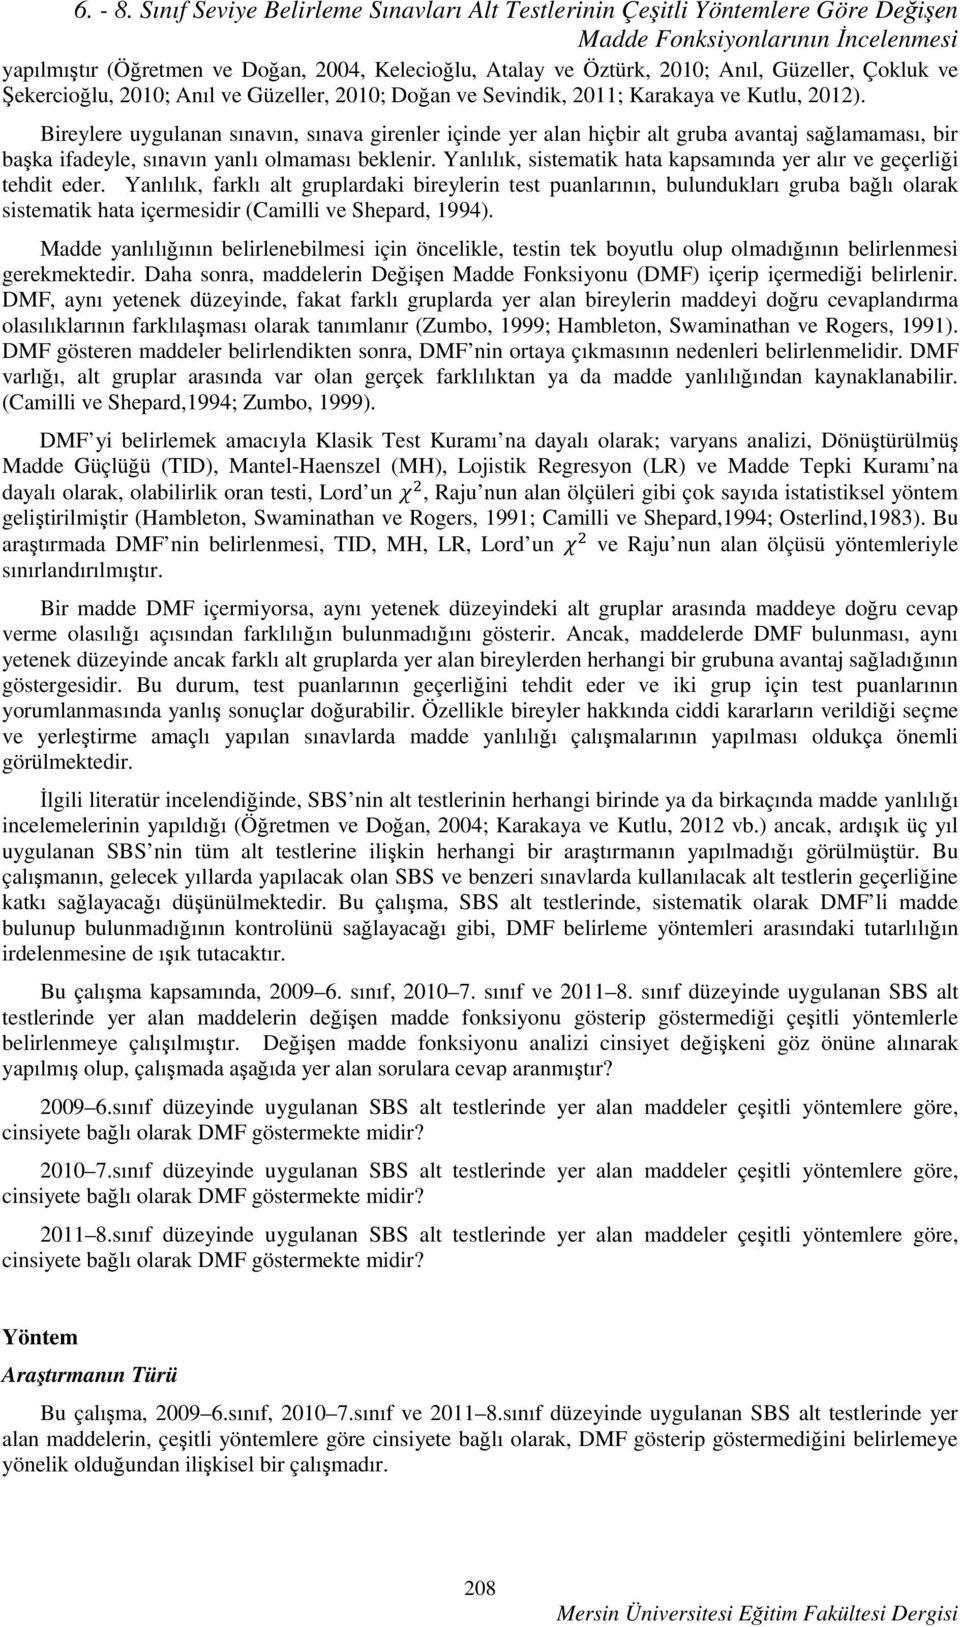 Çokluk ve Şekercioğlu, 2010; Anıl ve Güzeller, 2010; Doğan ve Sevindik, 2011; Karakaya ve Kutlu, 2012).